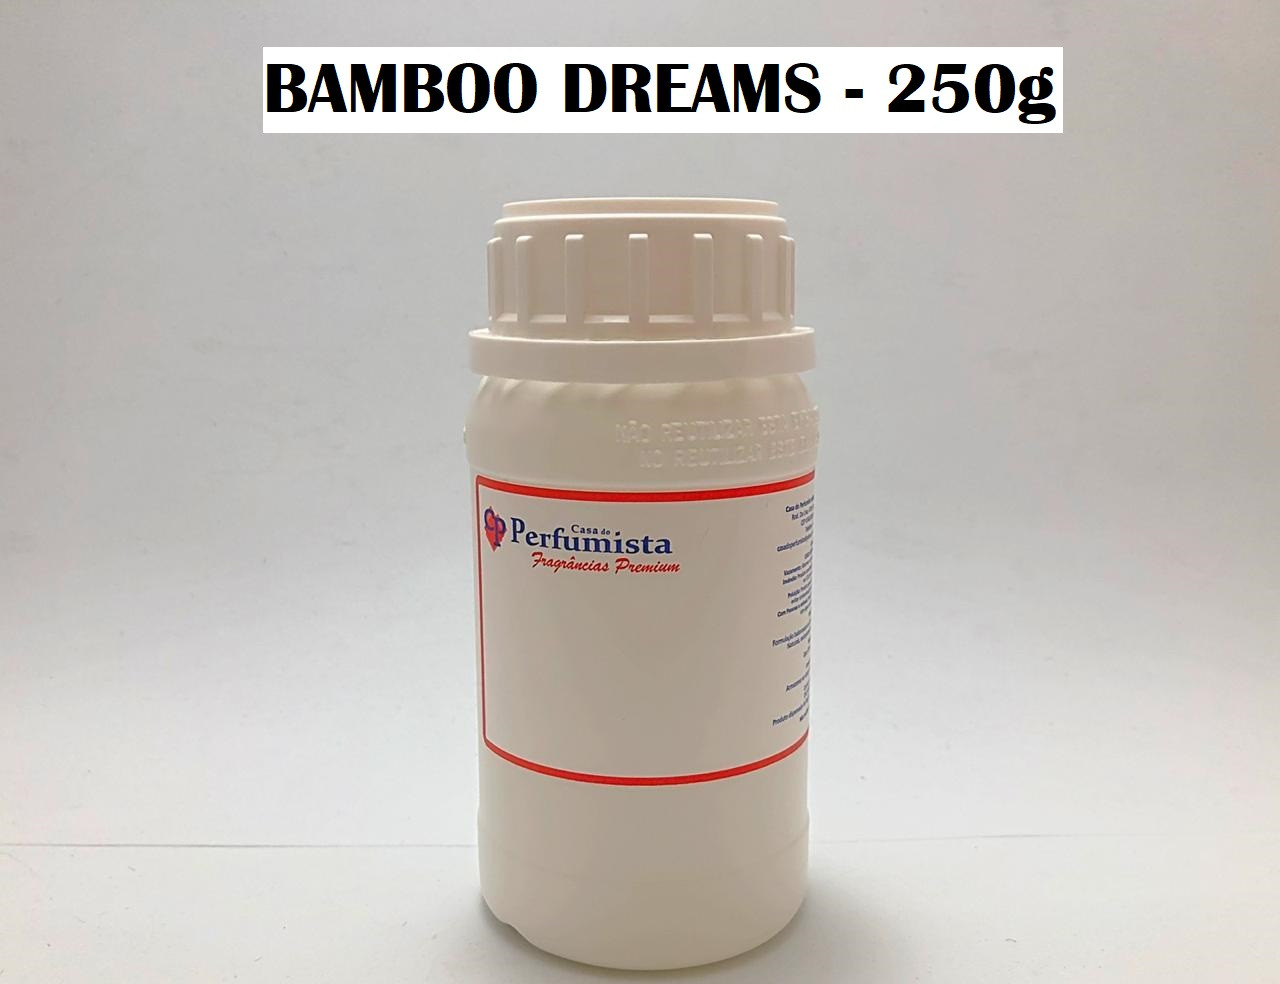 BAMBOO DREAMS - 250g